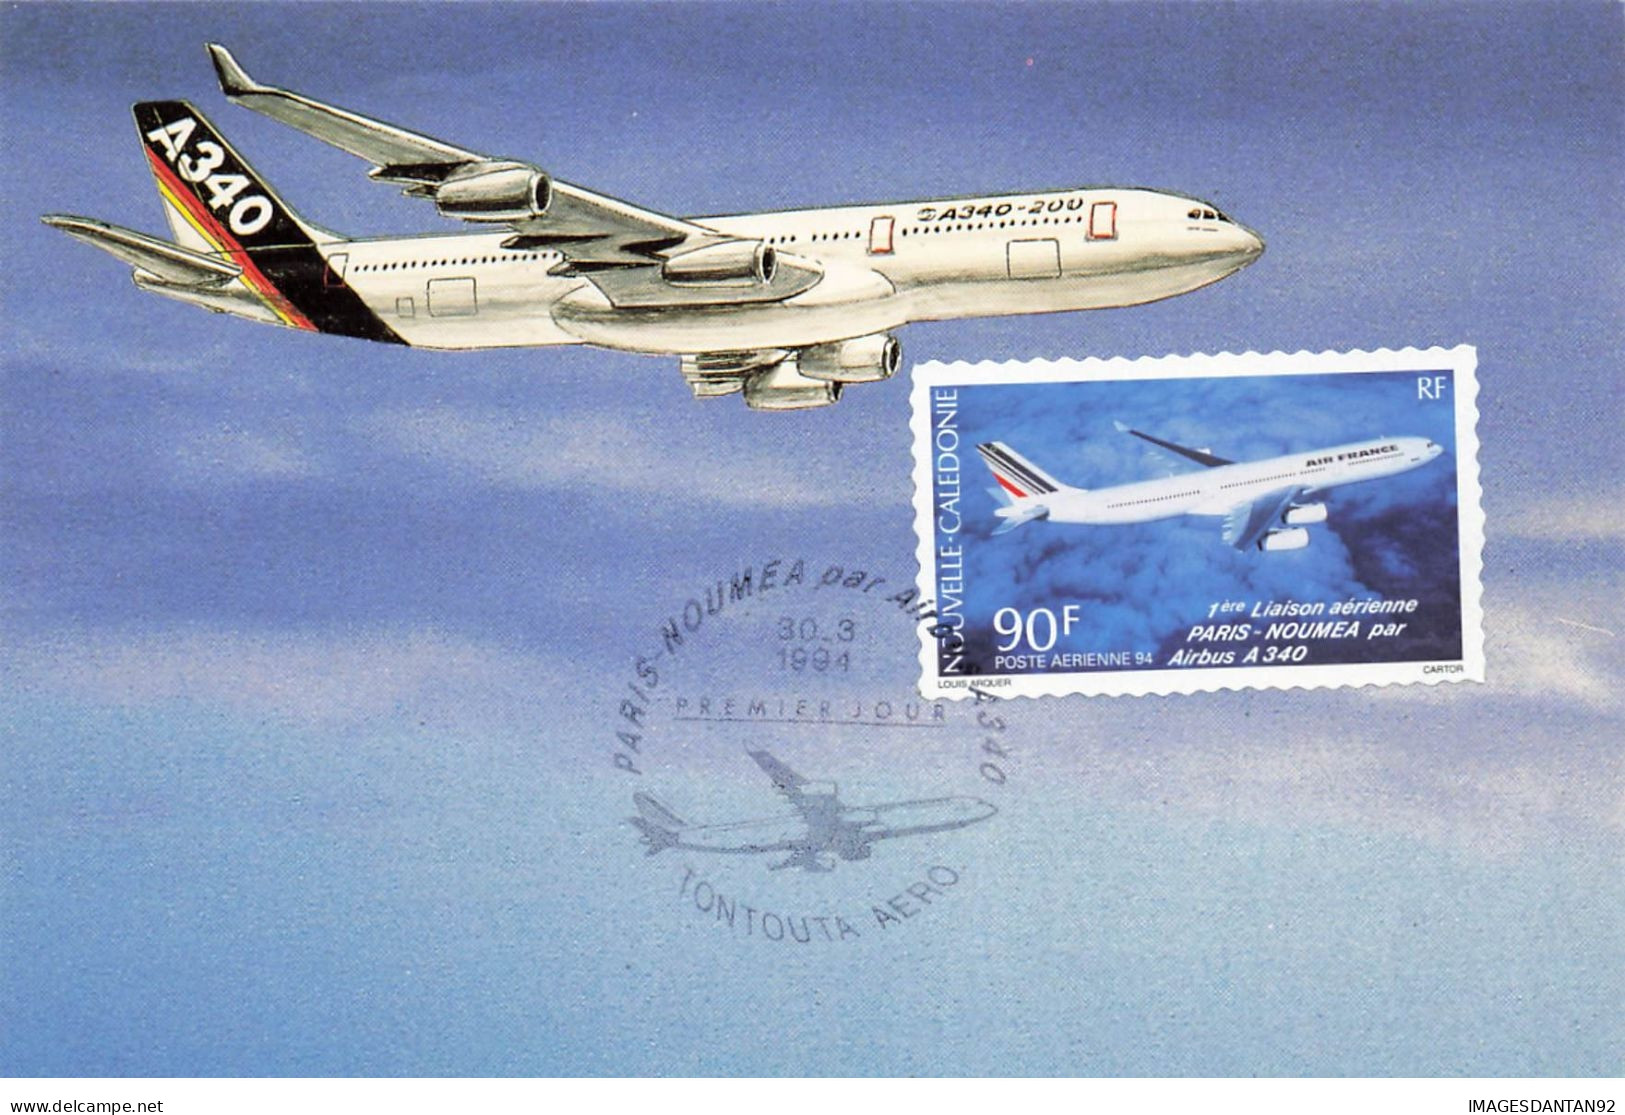 CARTE MAXIMUM #23577 NOUVELLE CALEDONIE NOUMEA 1994 1ERE LIAISON PARIS NOUMEA AIRBUS A340 TONTOUTA AERODROME AIR FRANCE - Maximum Cards